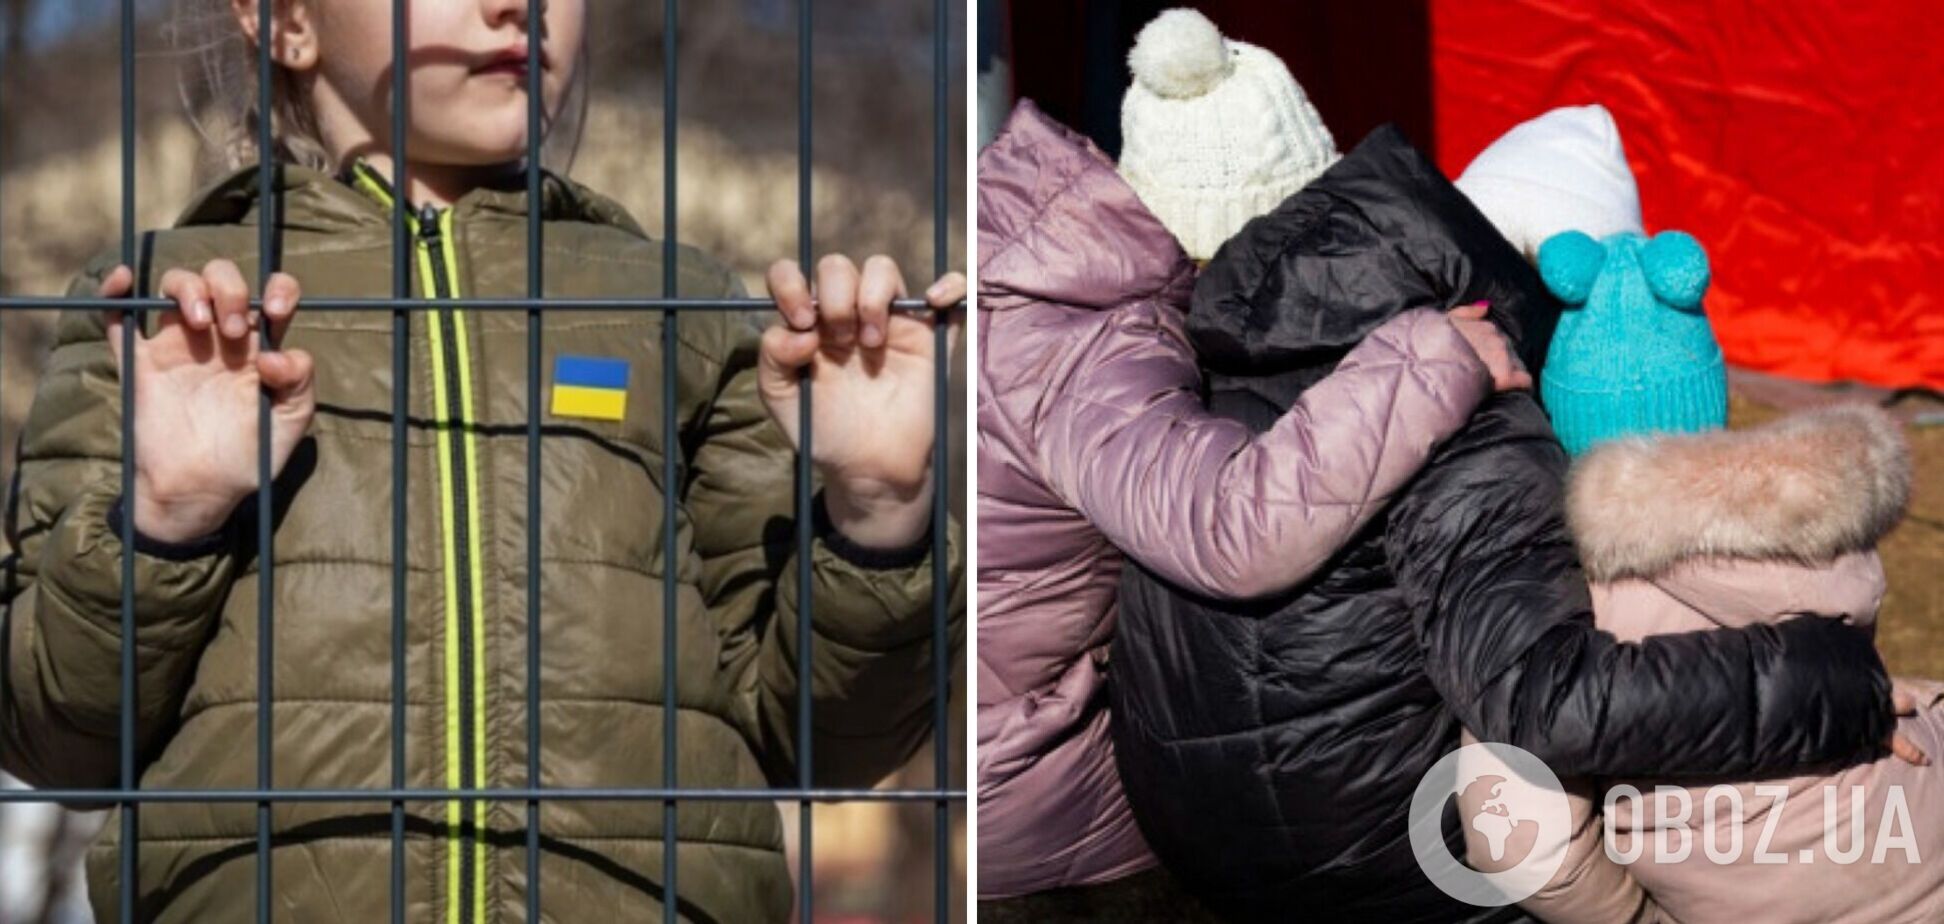 'Злочин, про який не можна мовчати': депутати Ради звернулися до ООН через примусову депортацію Росією дітей з України 